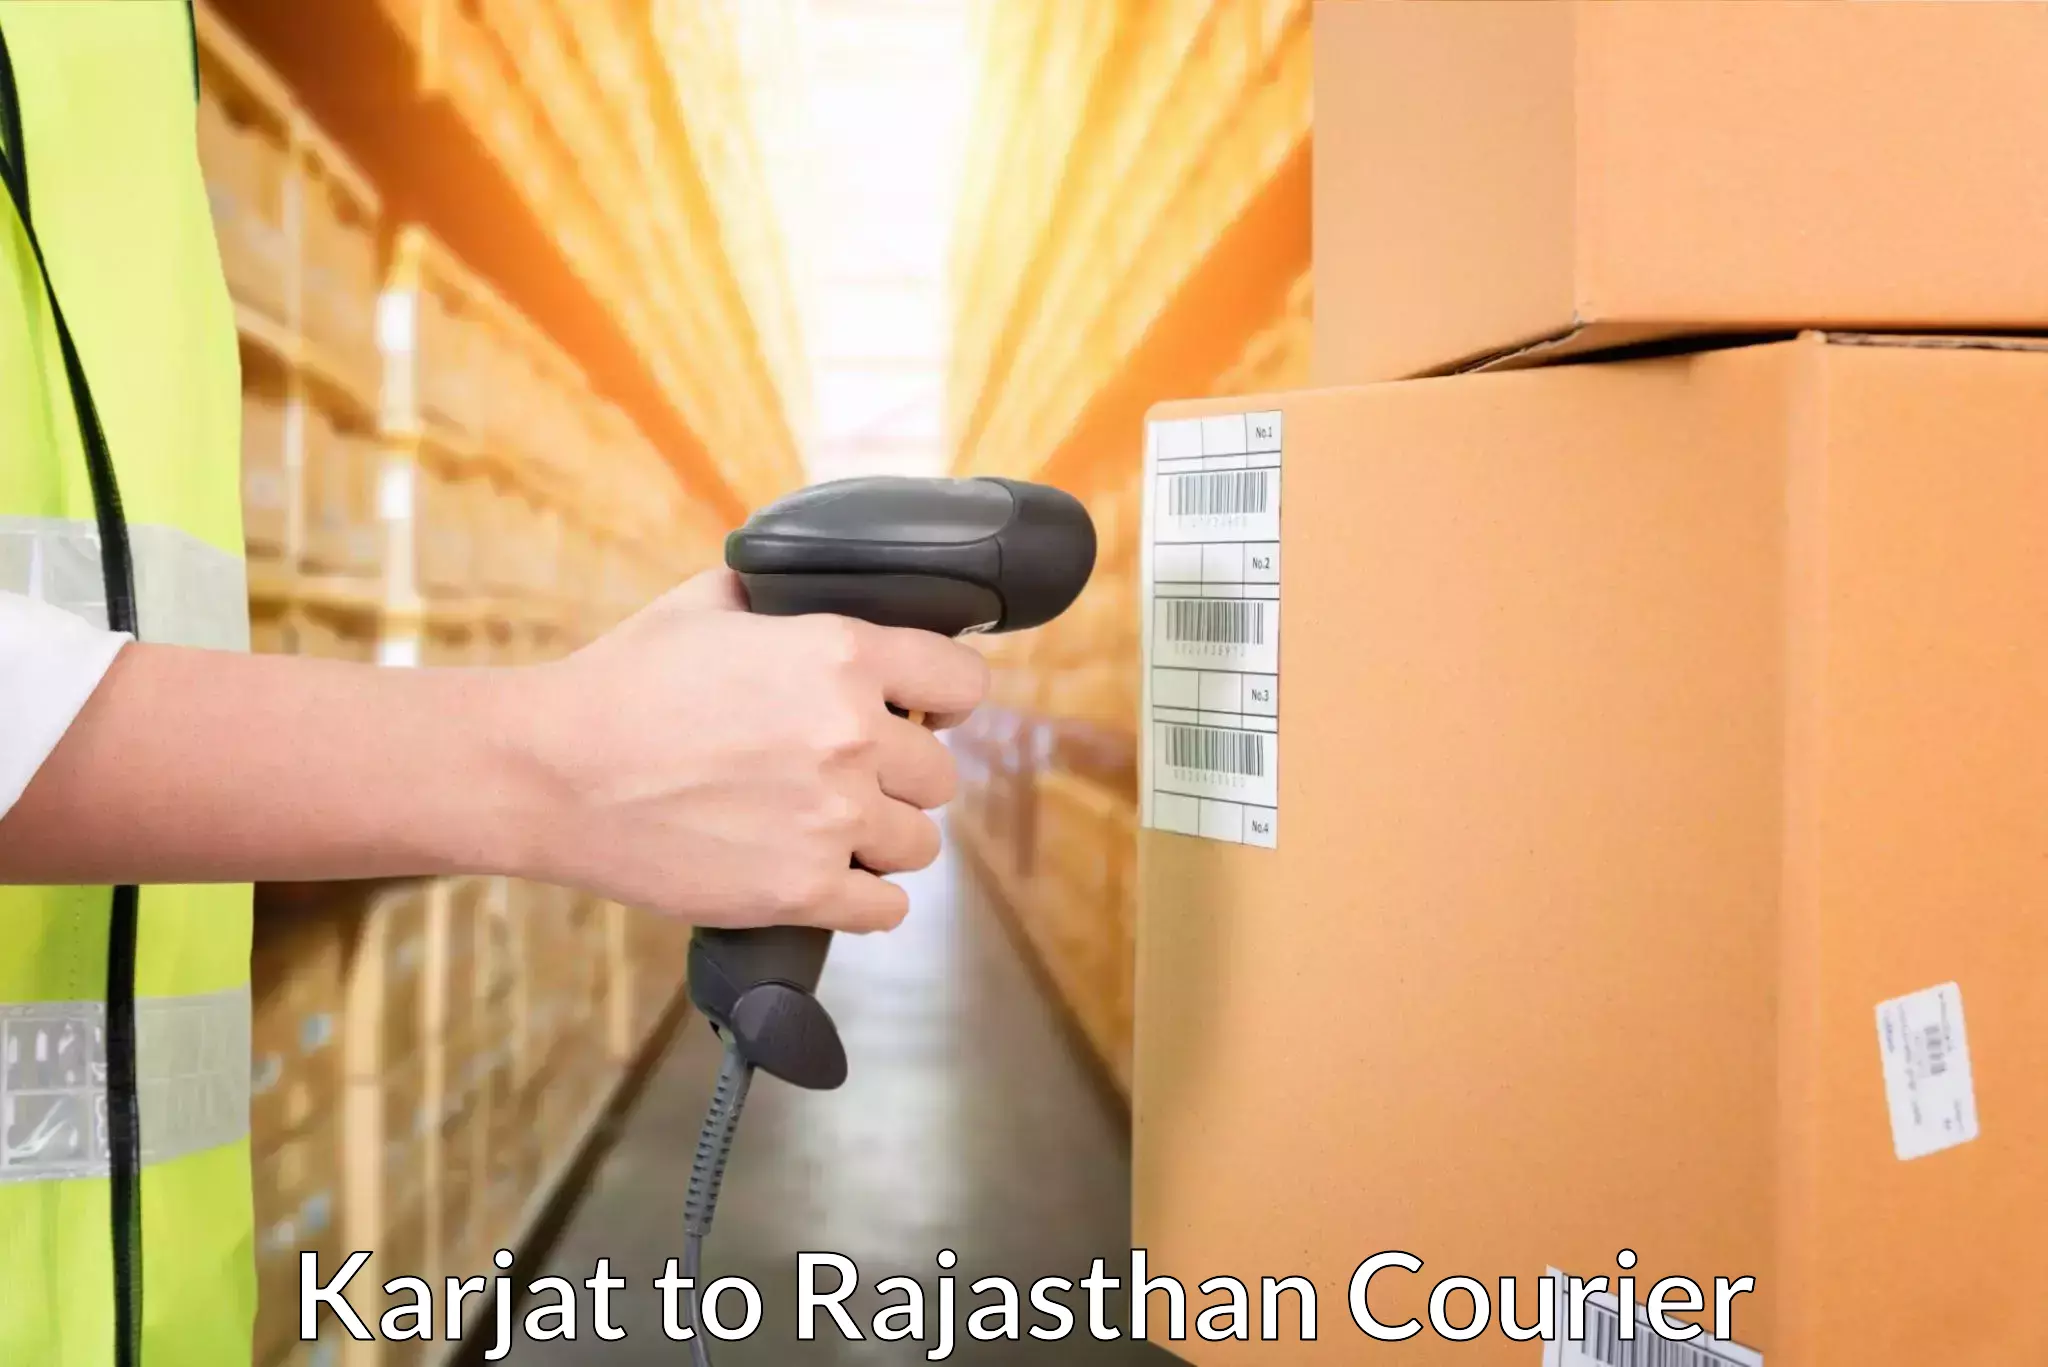 Flexible delivery schedules Karjat to Kumbhalgarh